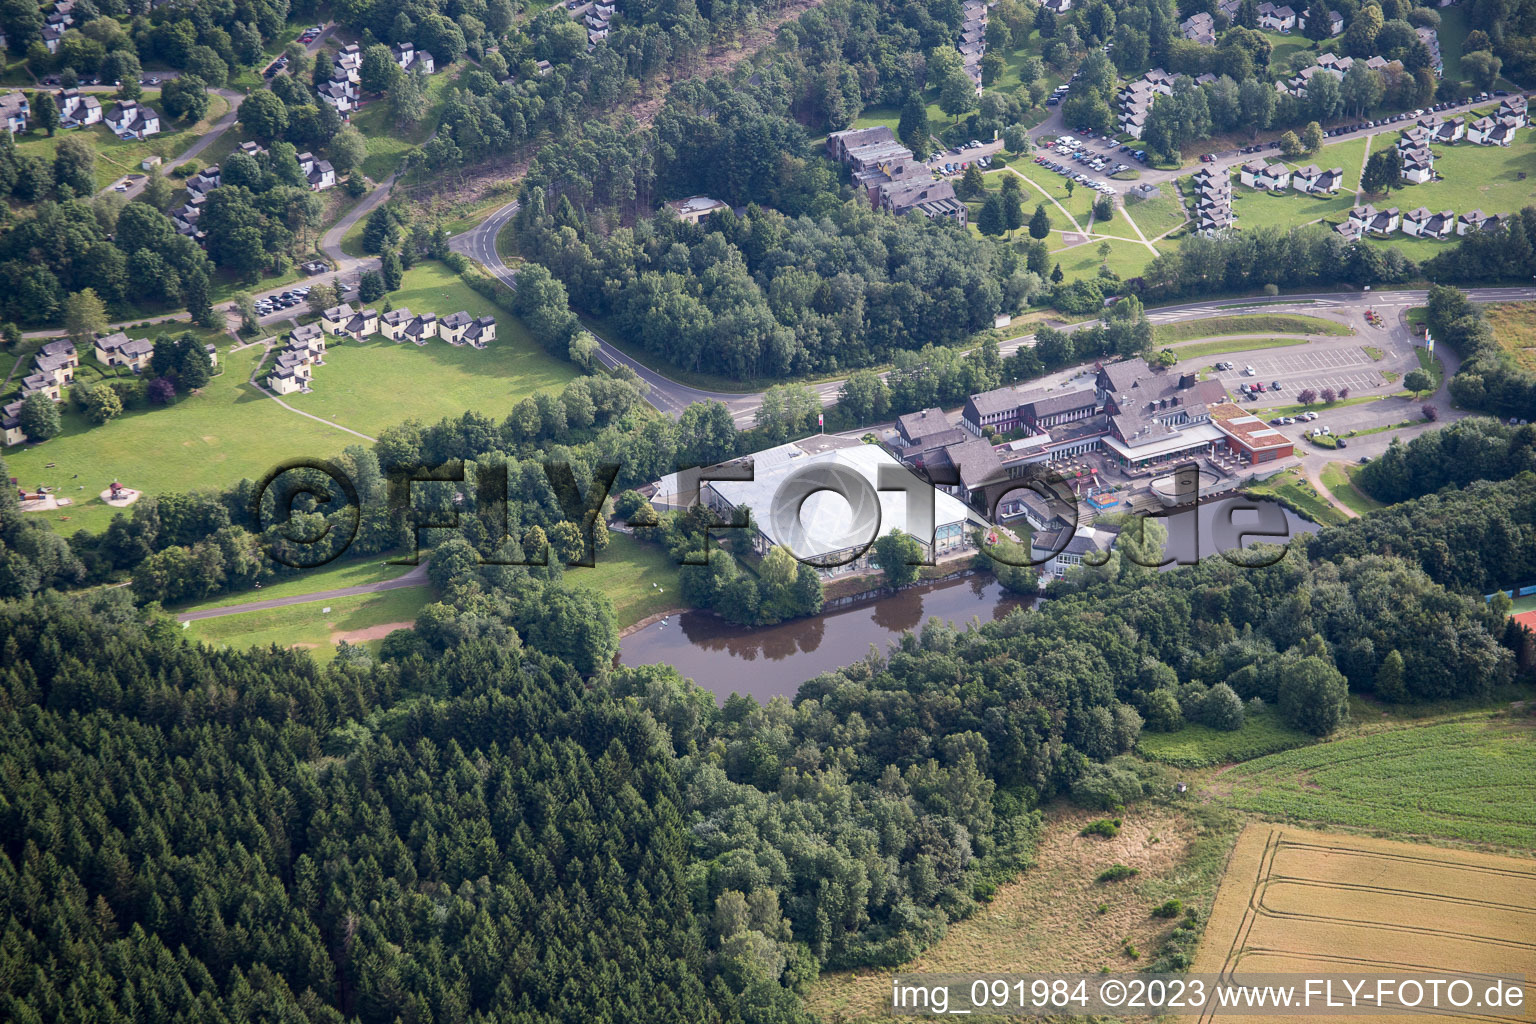 Vue aérienne de Parc aquatique à Oberhambach dans le département Rhénanie-Palatinat, Allemagne